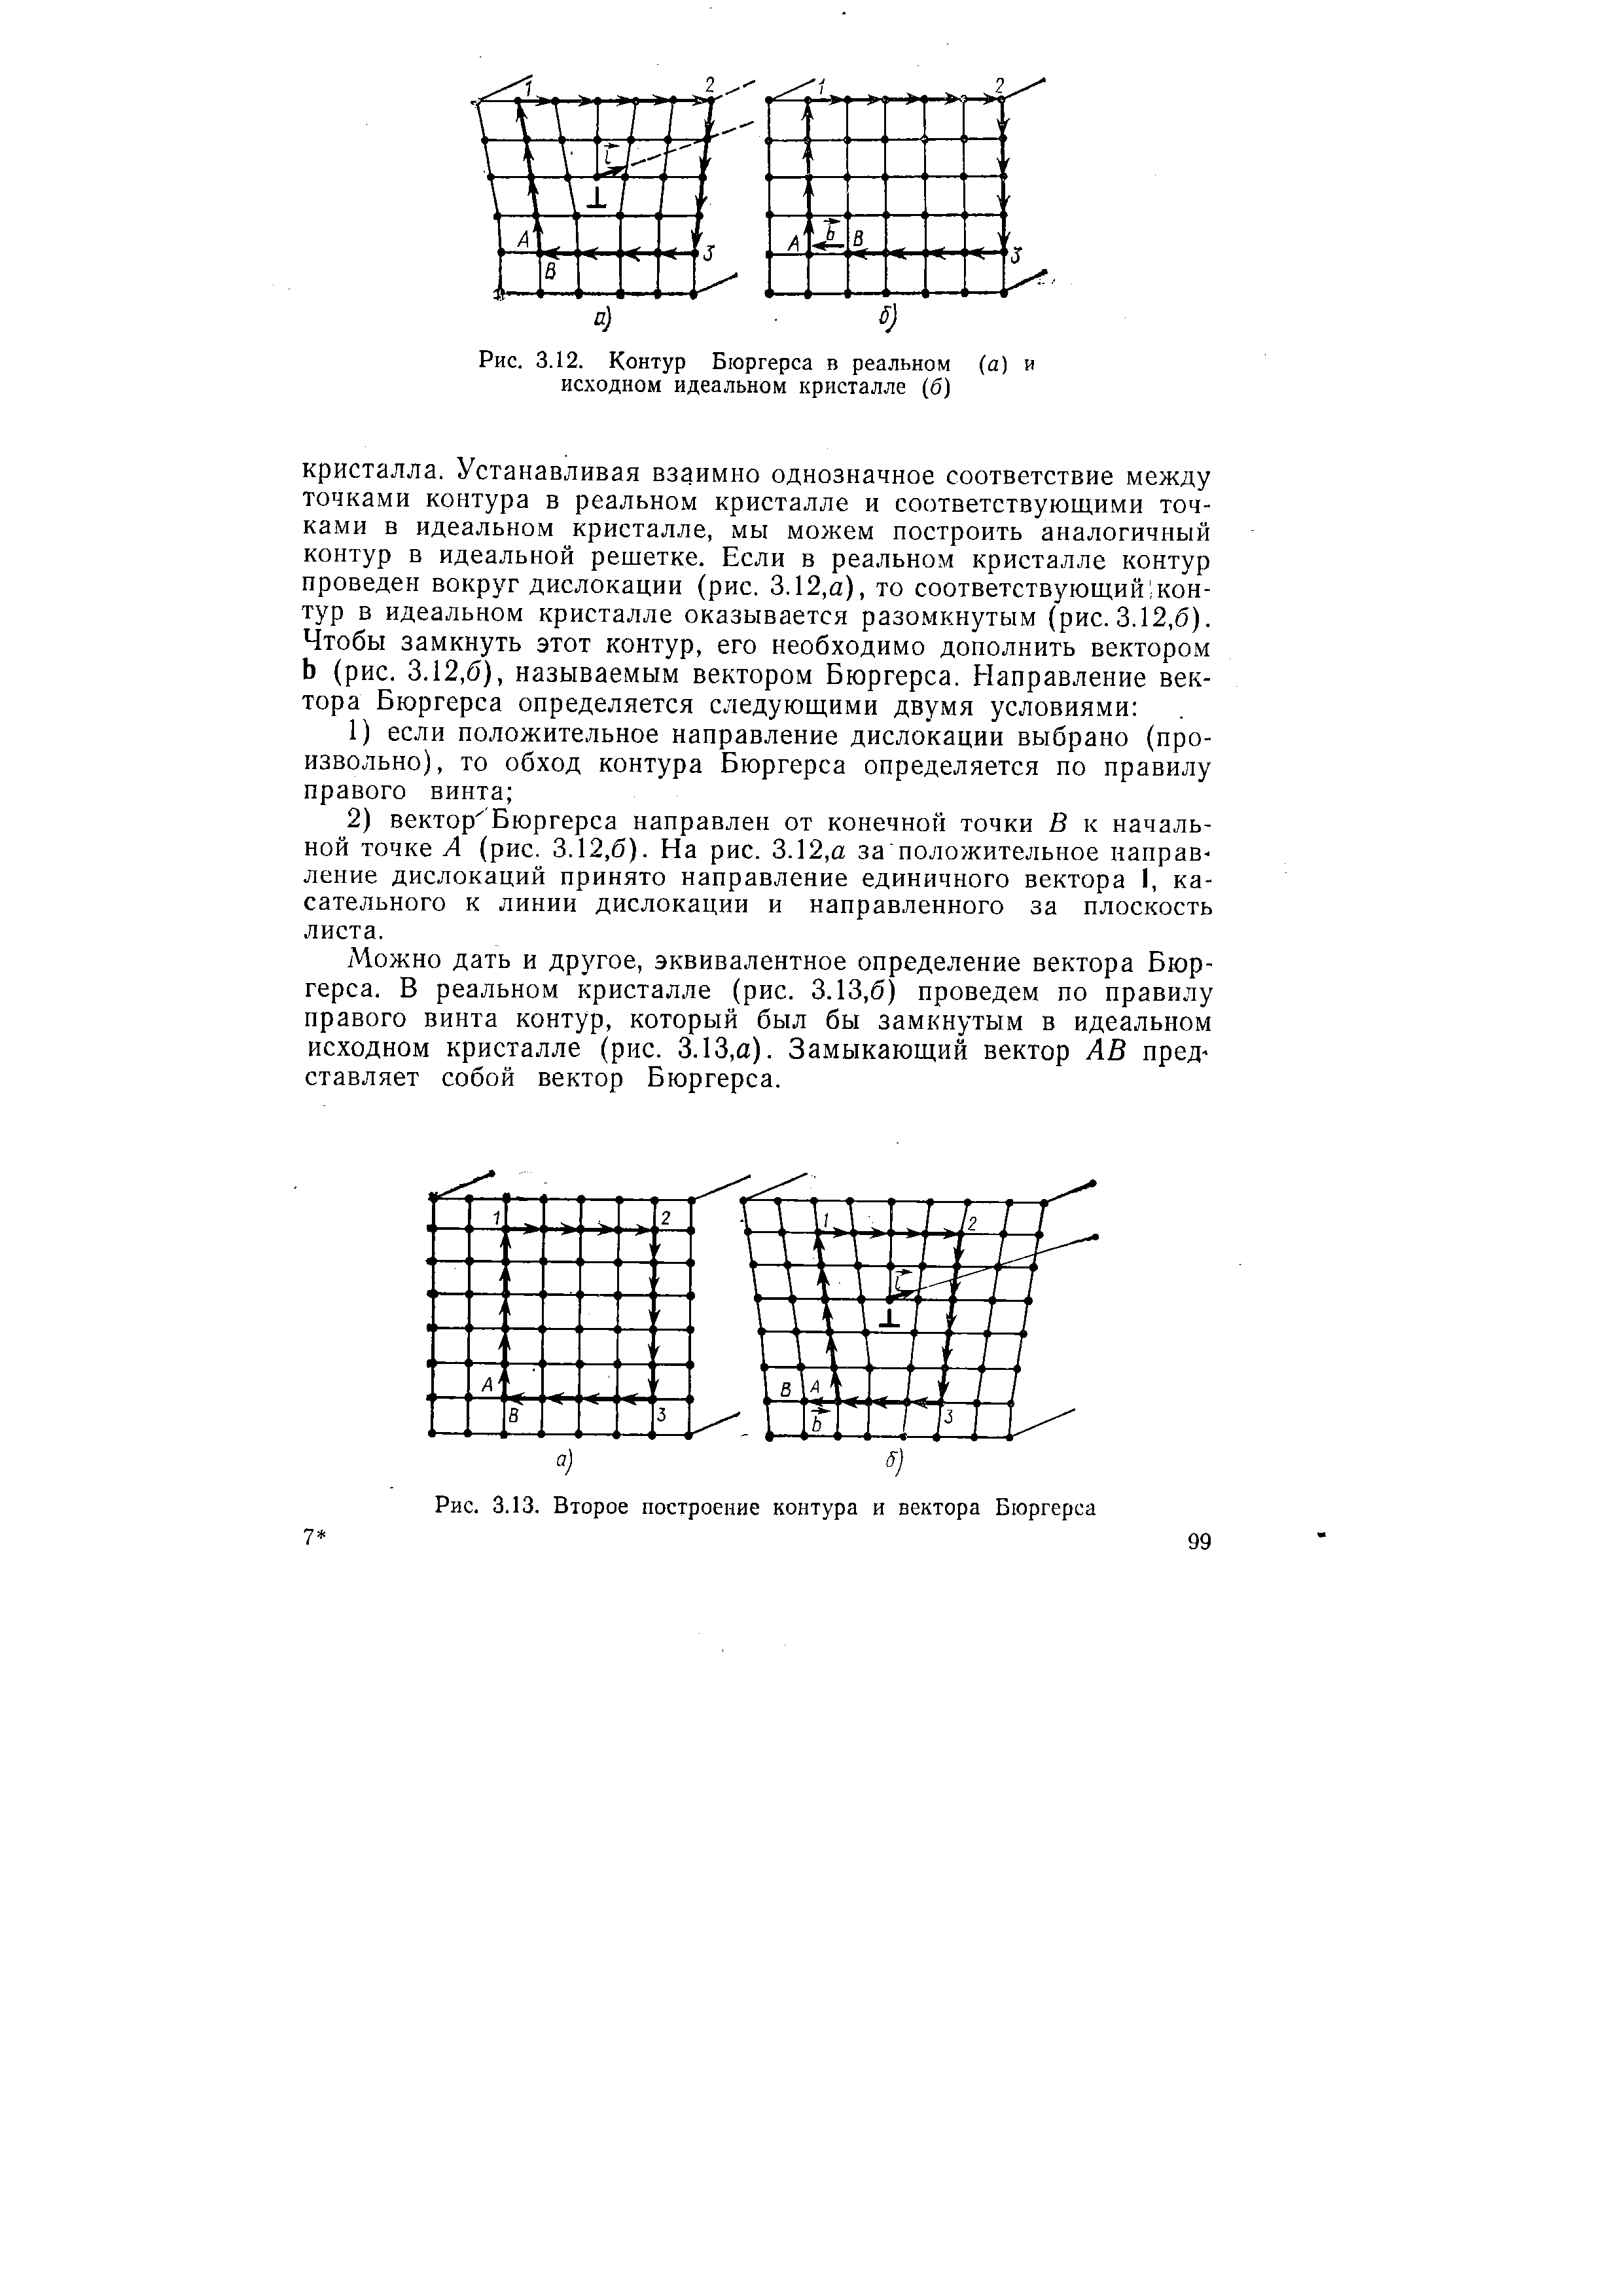 Рис. 3.12. Контур Бюргерса в реальном (а) и исходном идеальном кристалле (б)
